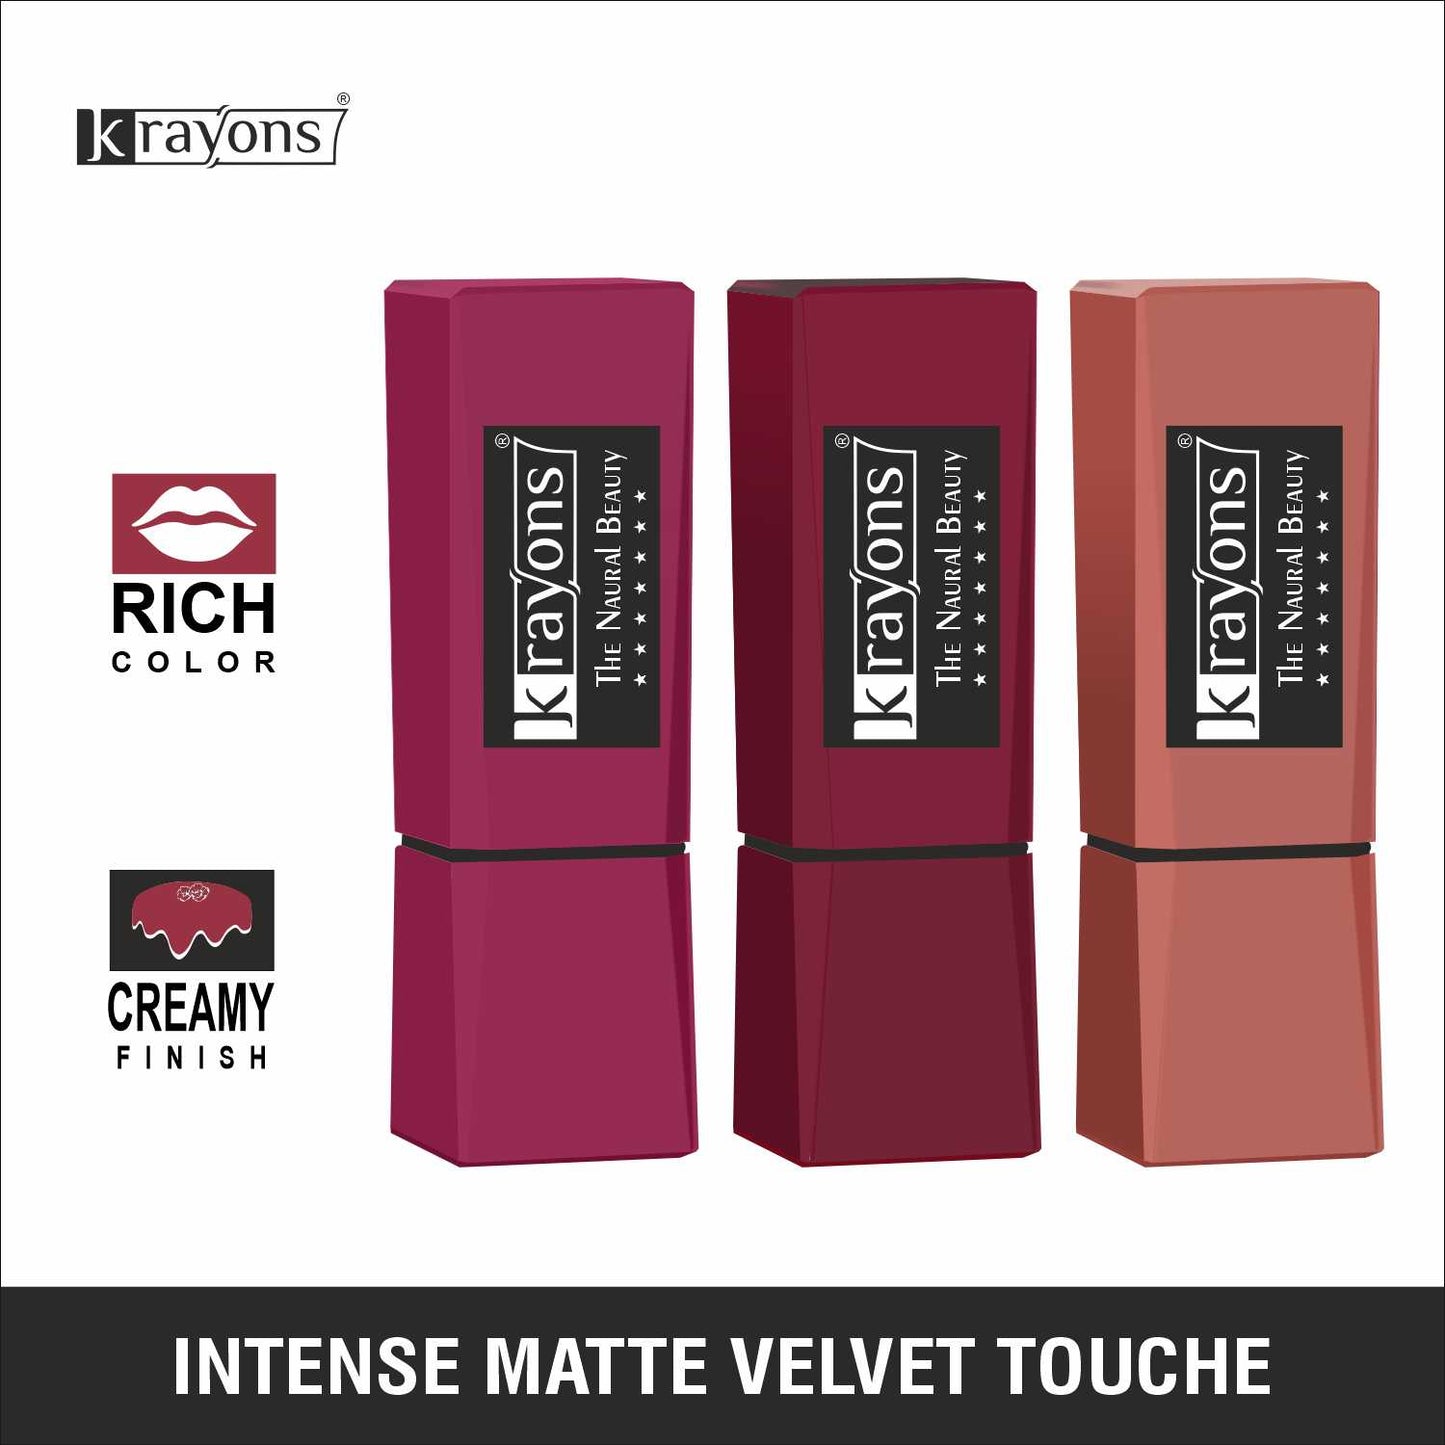 Krayons Intense Matte Lipstick, Waterproof, Longlasting, Rode Red, Cherry Maroon, Nude Beige, 3.5gm Each (Pack of 3)